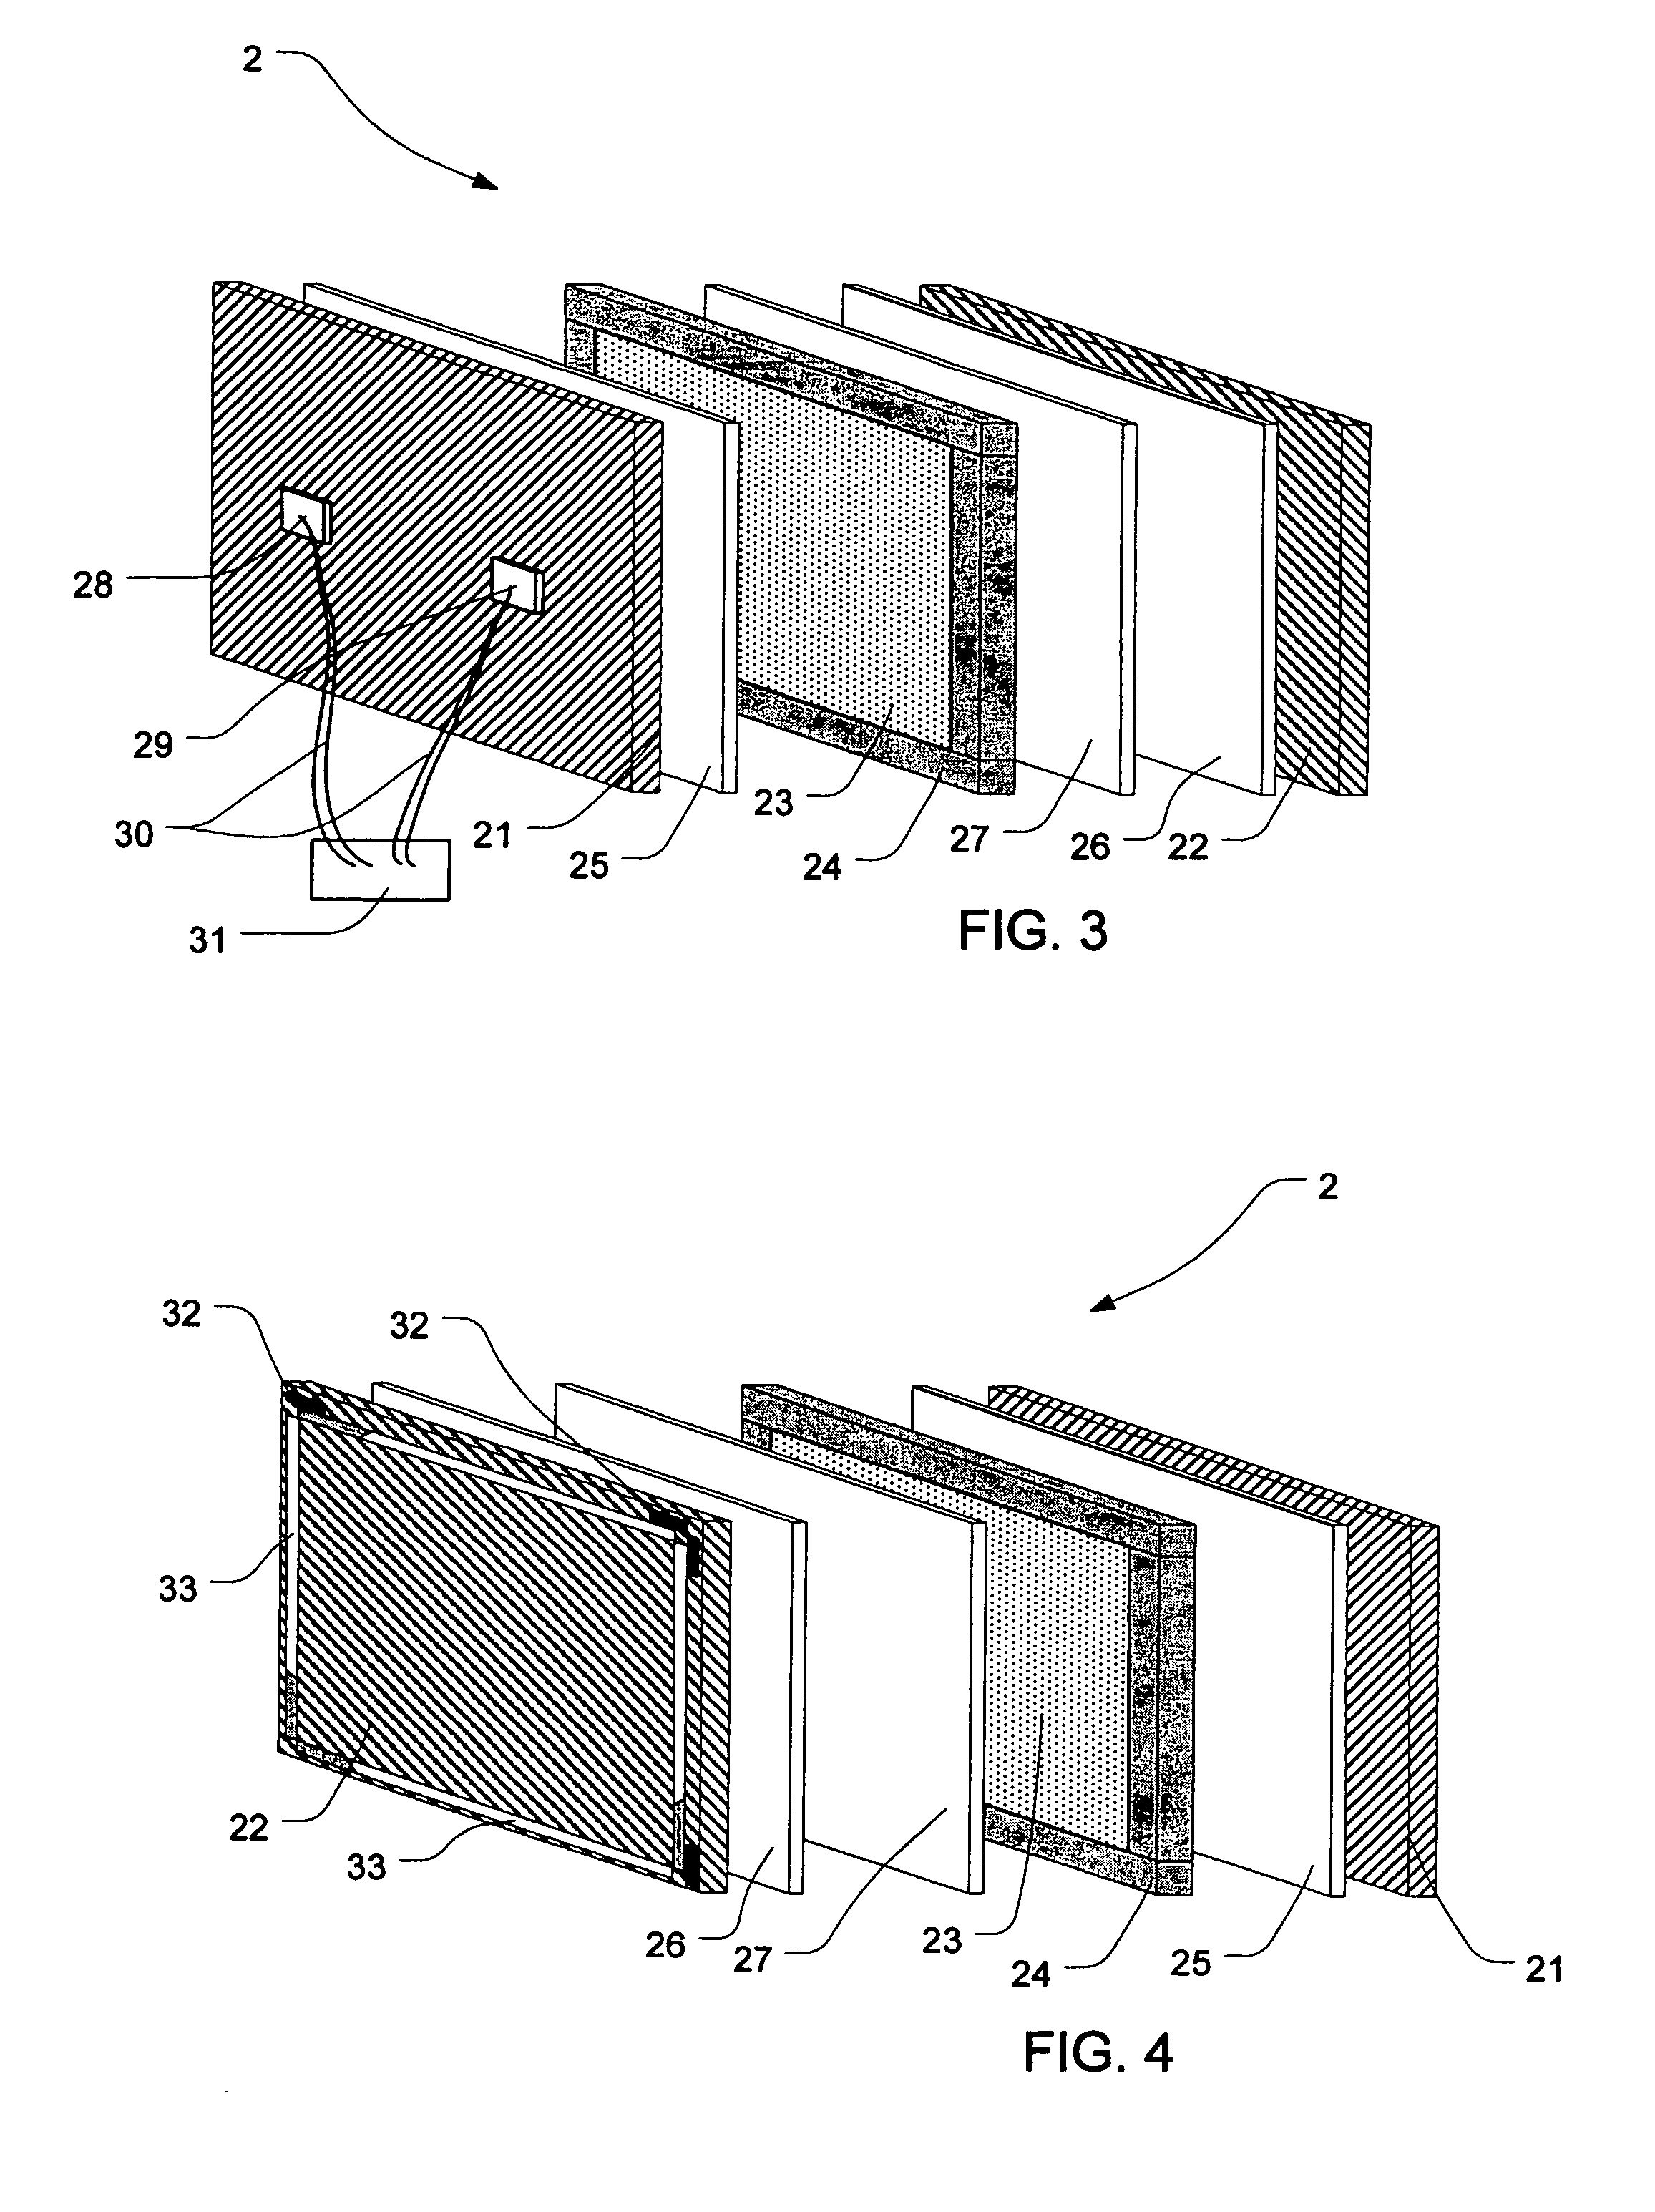 Display and speaker module